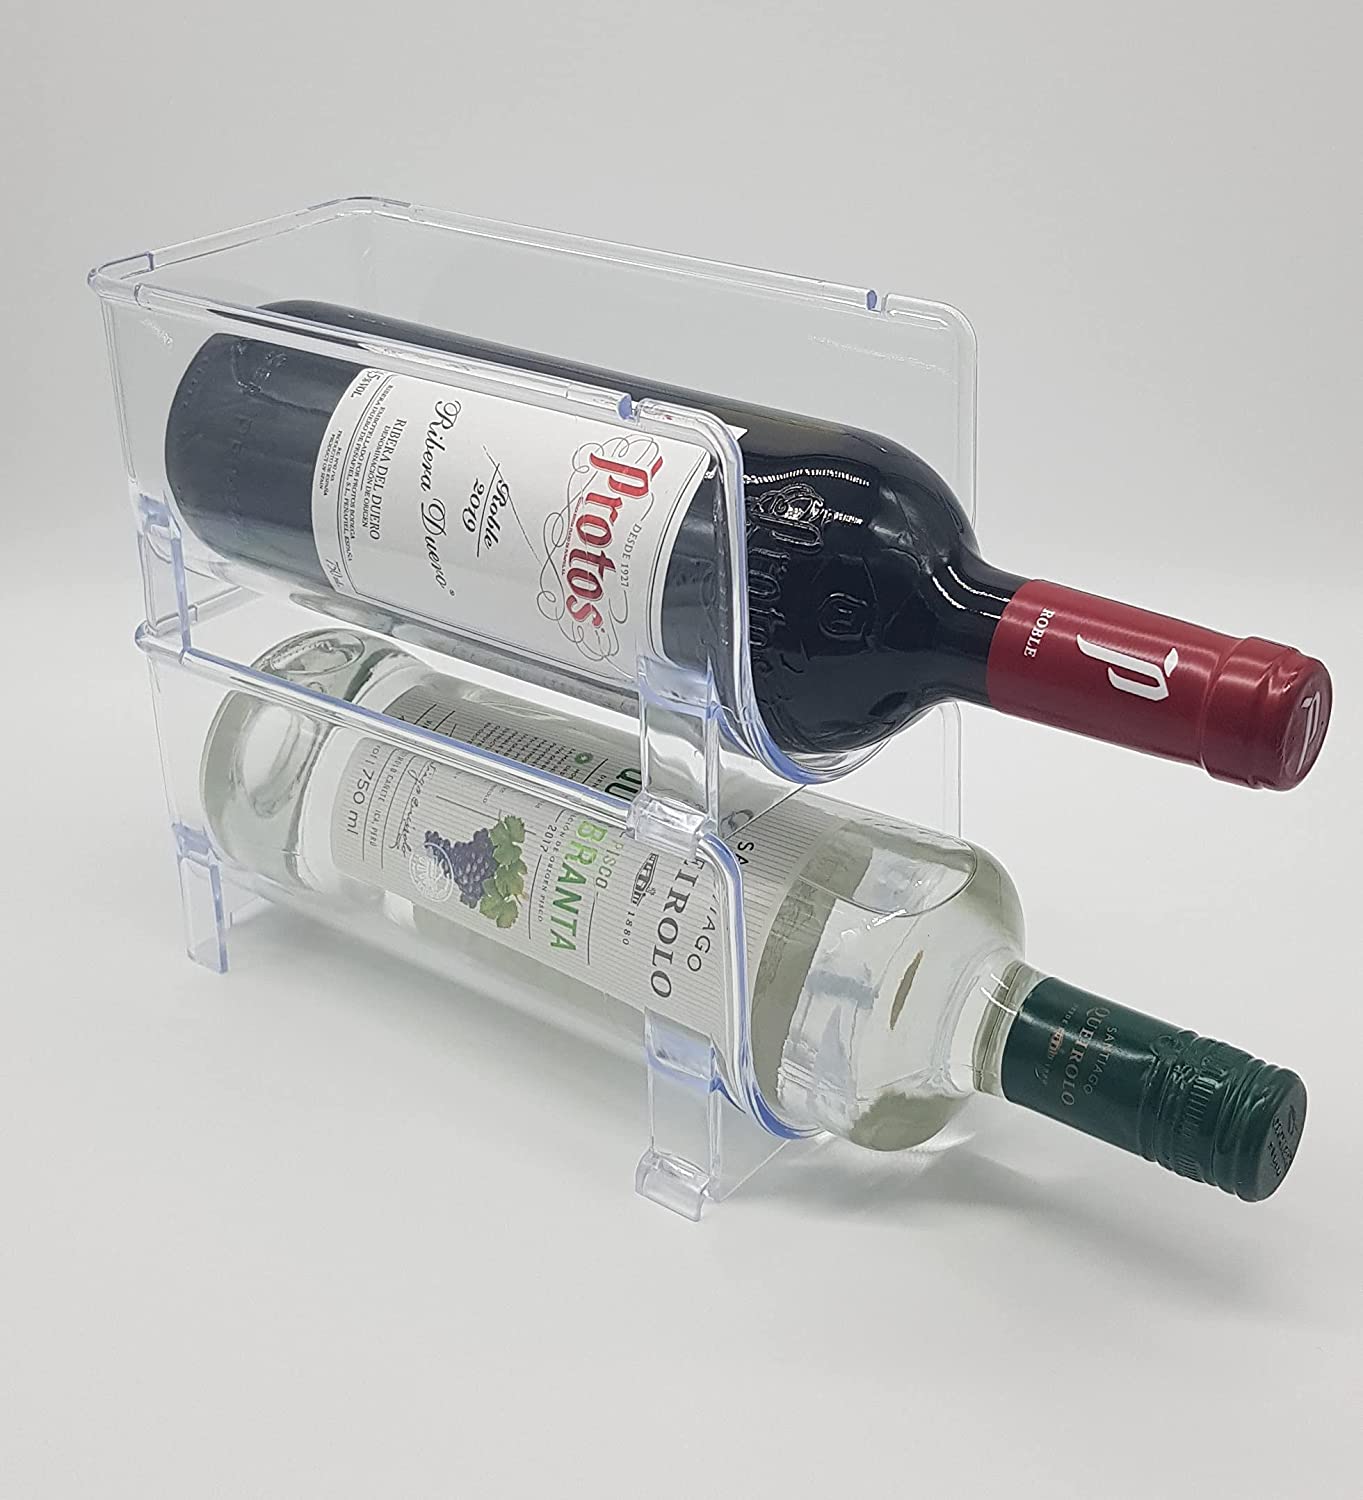 ALEMOK Organisateur de bouteilles de vin, casier à vin empilable transparent, casier à vin pour réfrigérateur, casier à vin de comptoir, stockage de bouteilles(2)